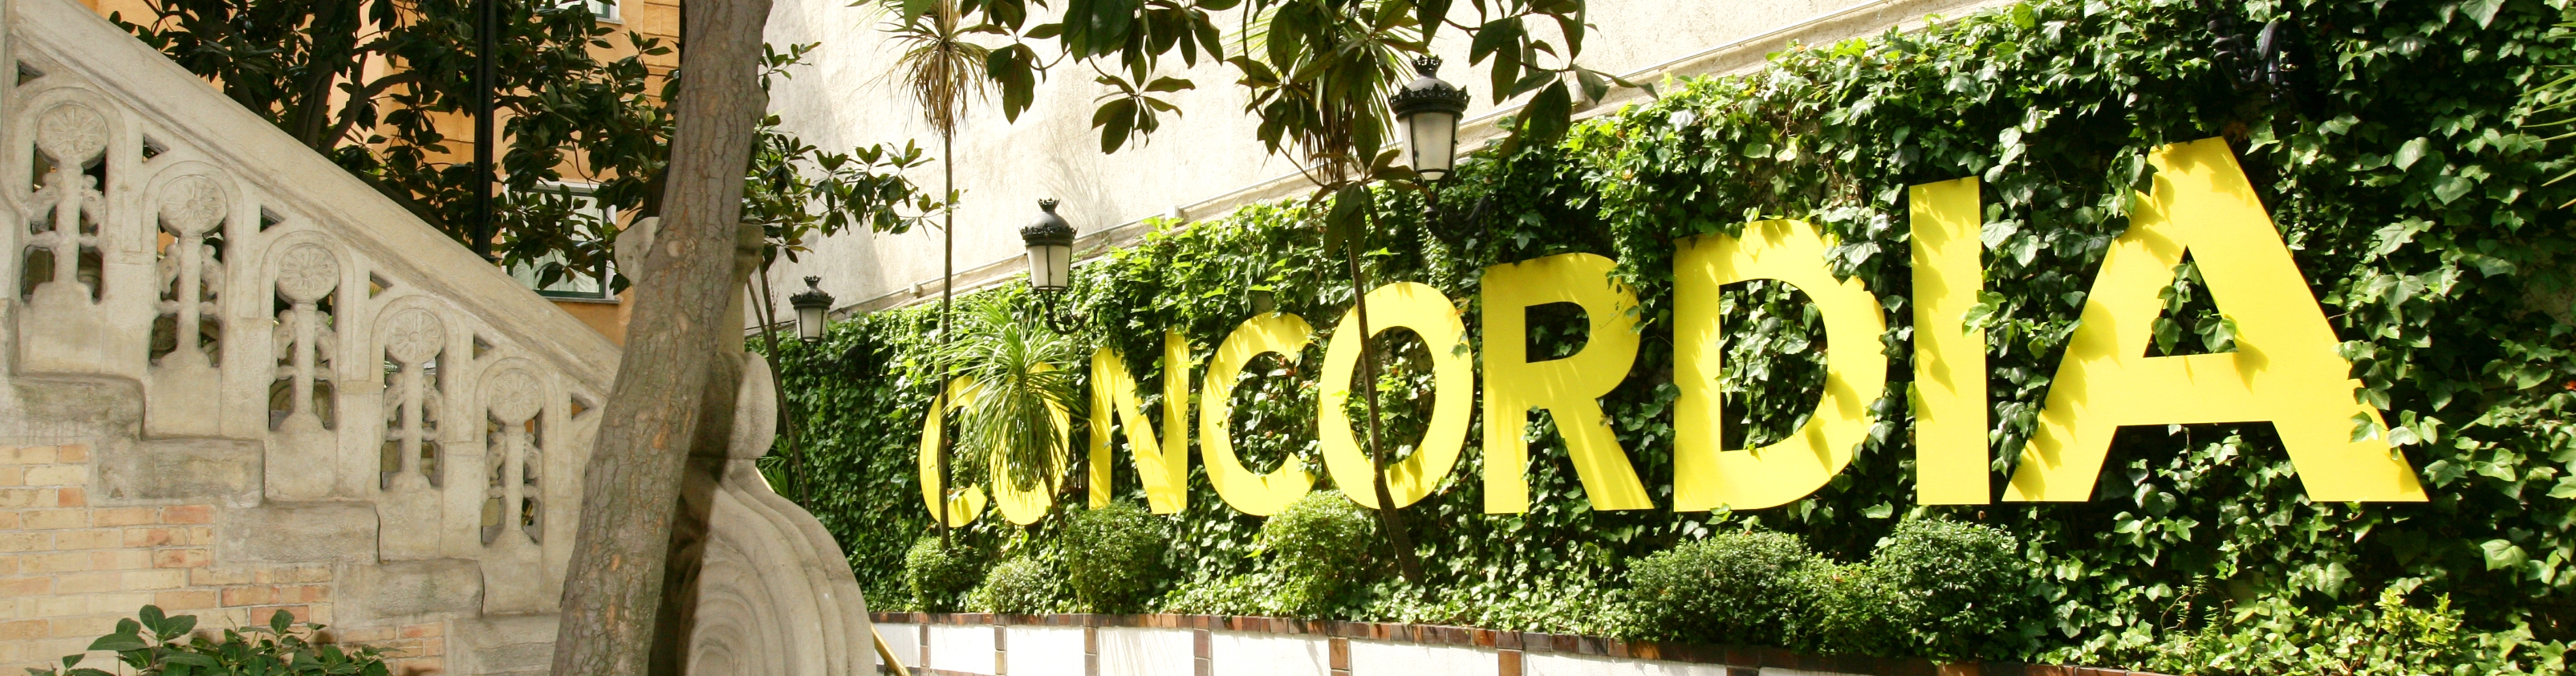 La palabra "Concordia" adornó el patio del Consejo General de la ONCE